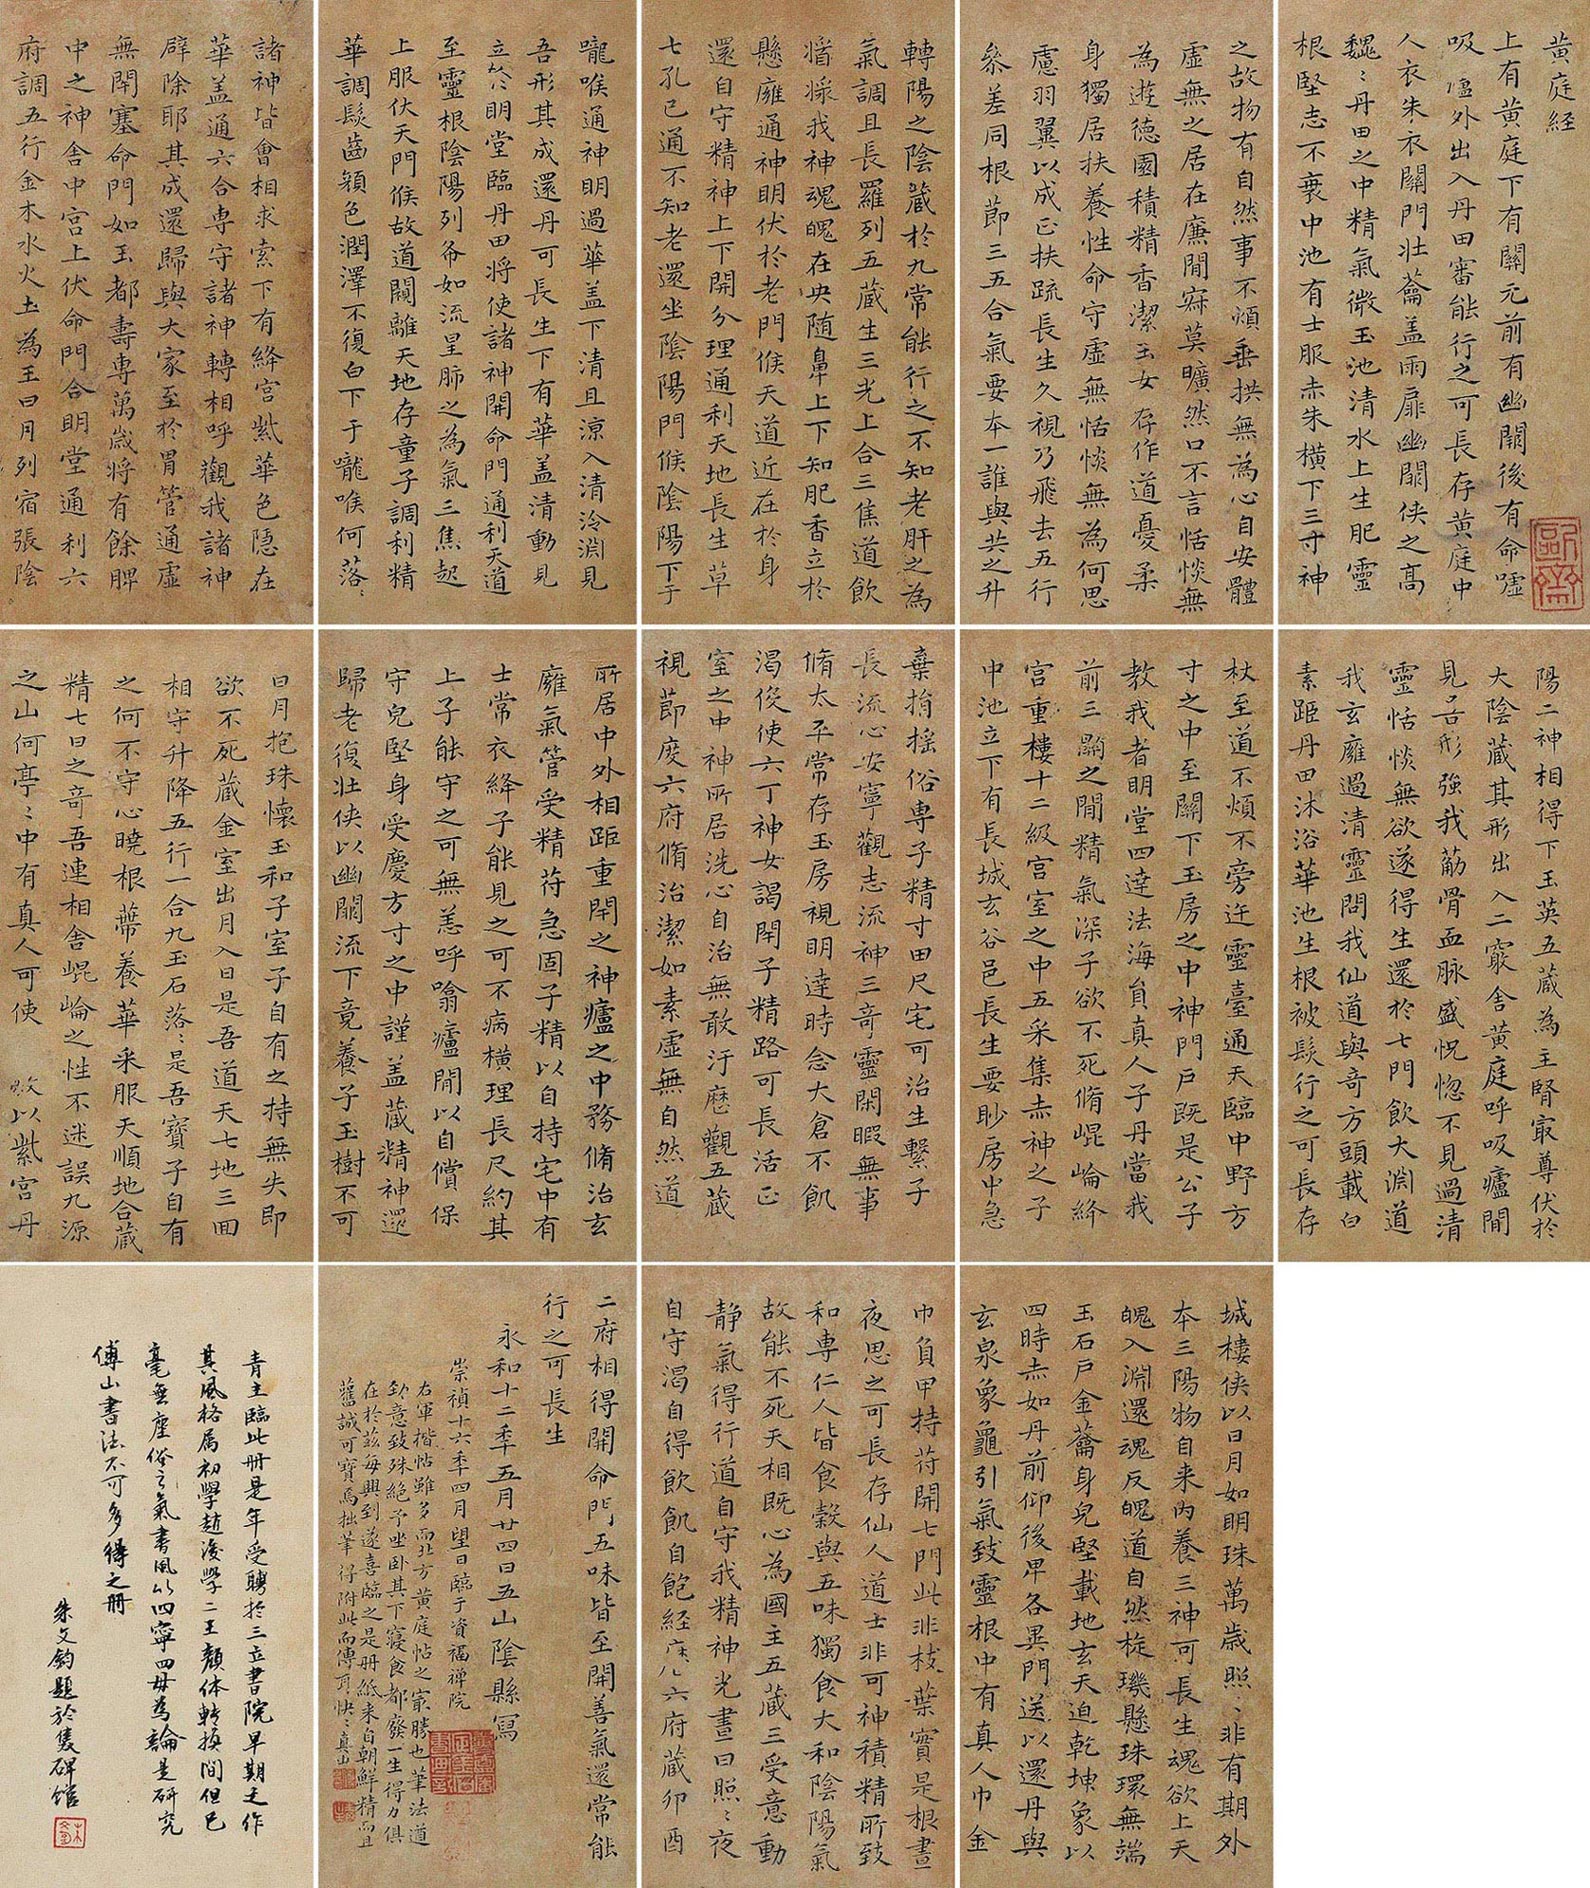 1684)拍品分类中国书画